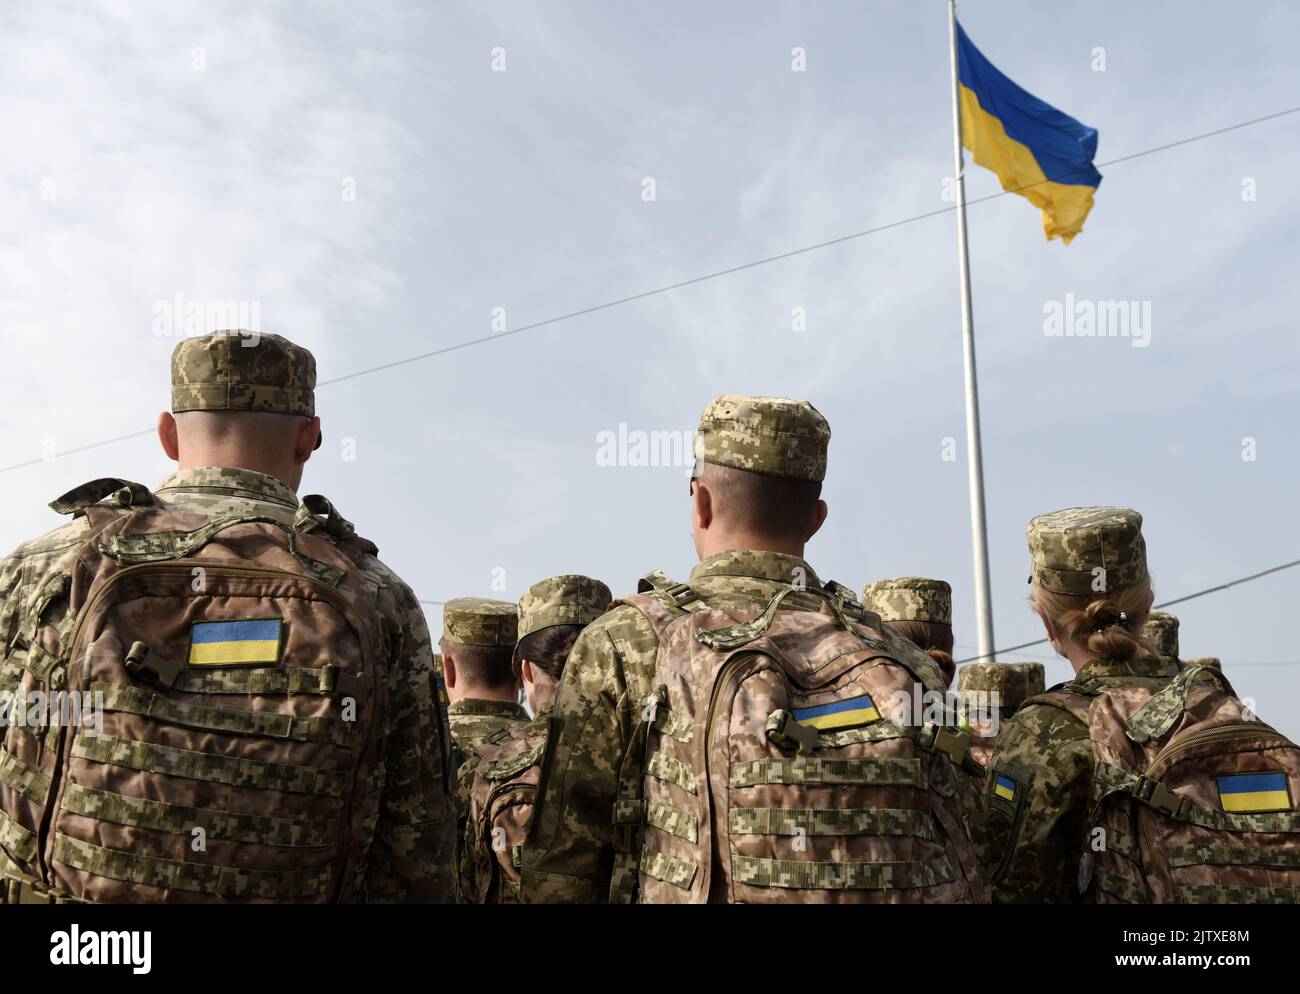 Forze armate dell'Ucraina. Soldato ucraino. Ucraino nell'esercito. Bandiera Ucraina su uniforme militare. Foto Stock